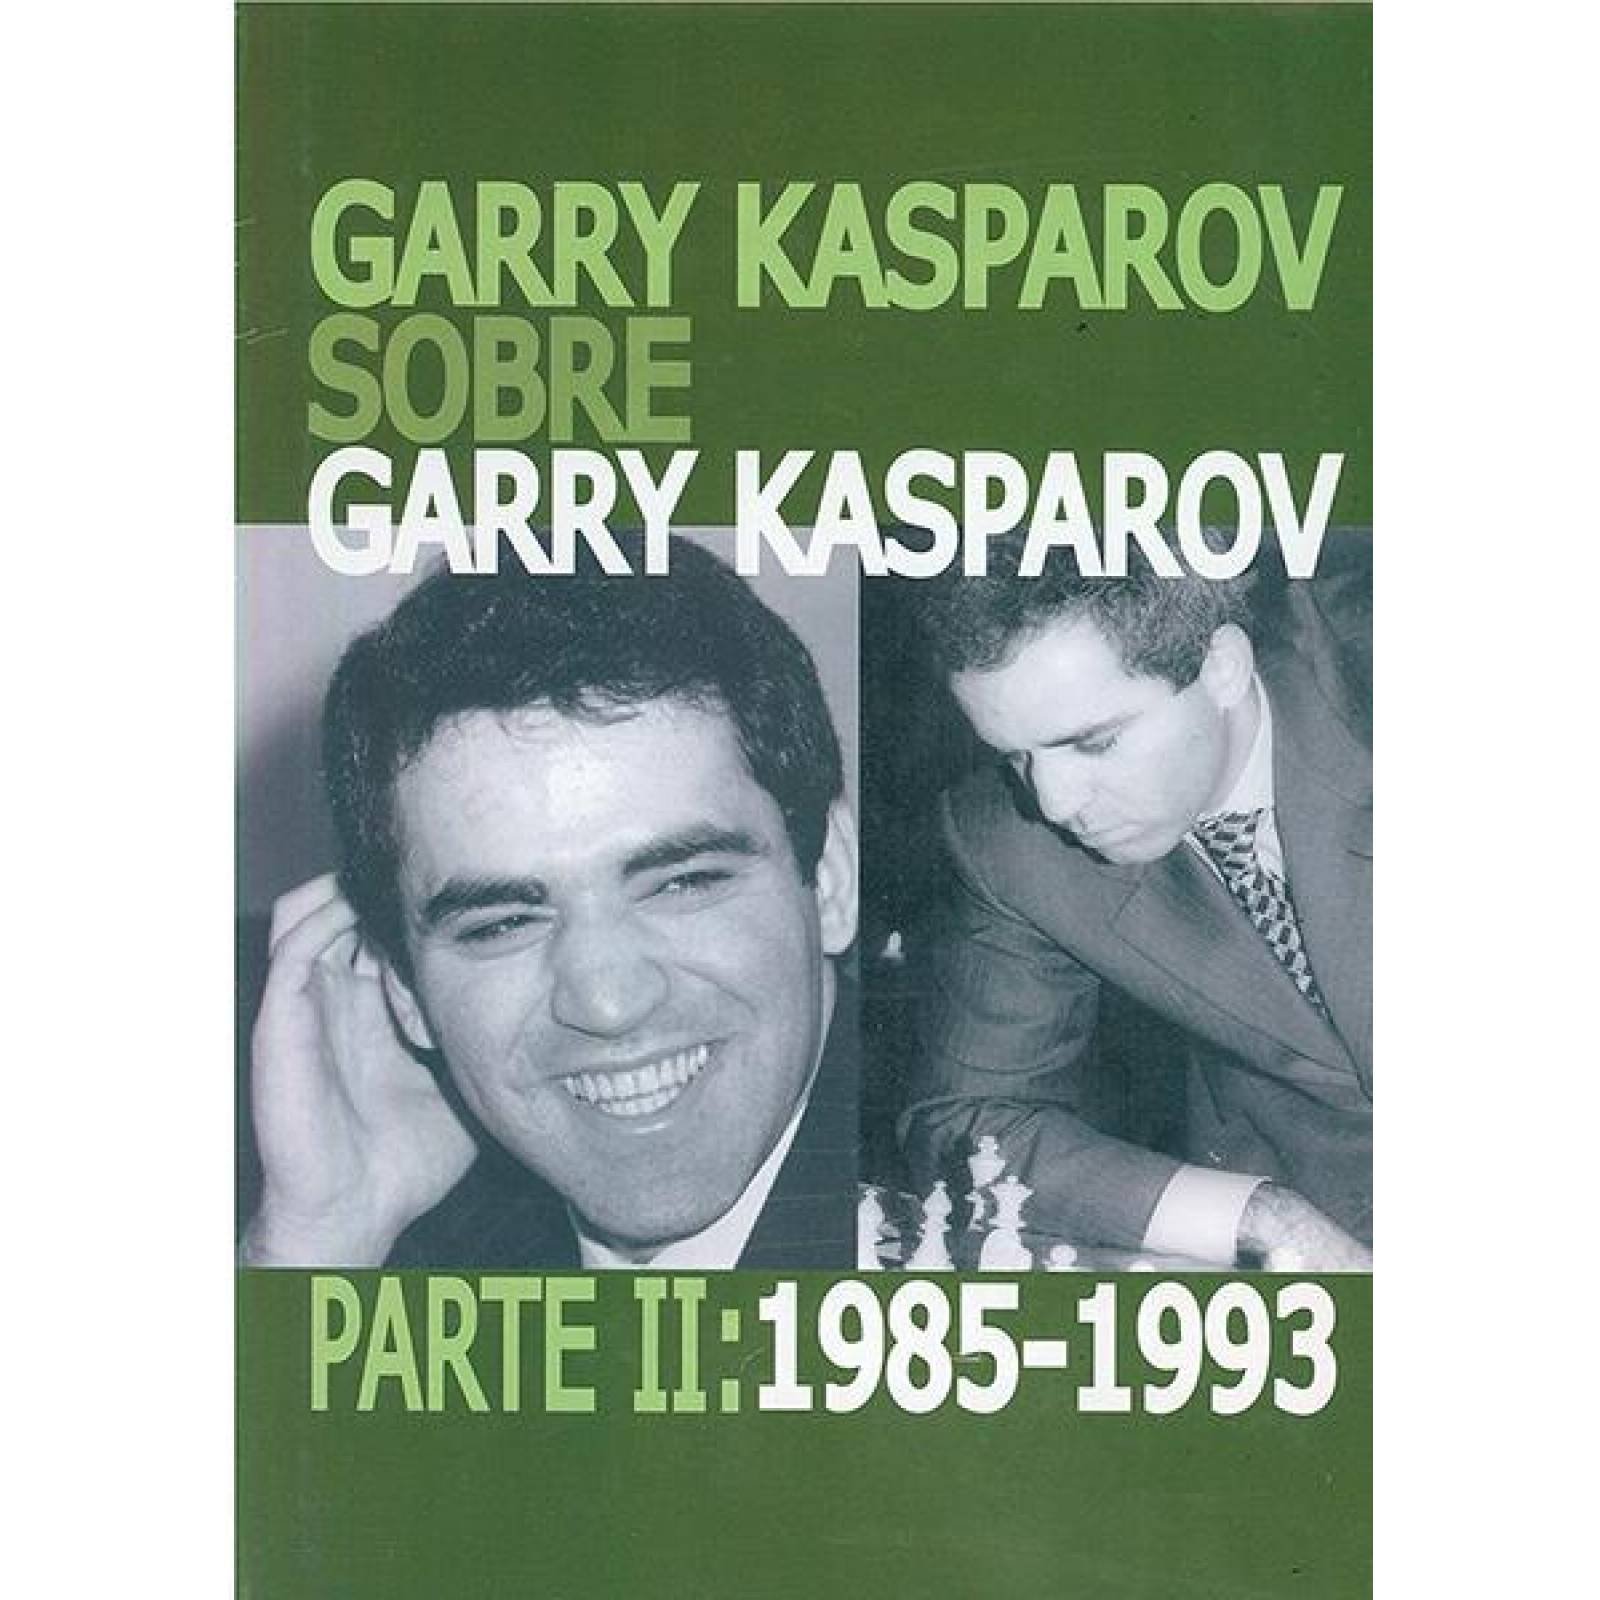 Garry kasparov sobre garry kasparov ii 